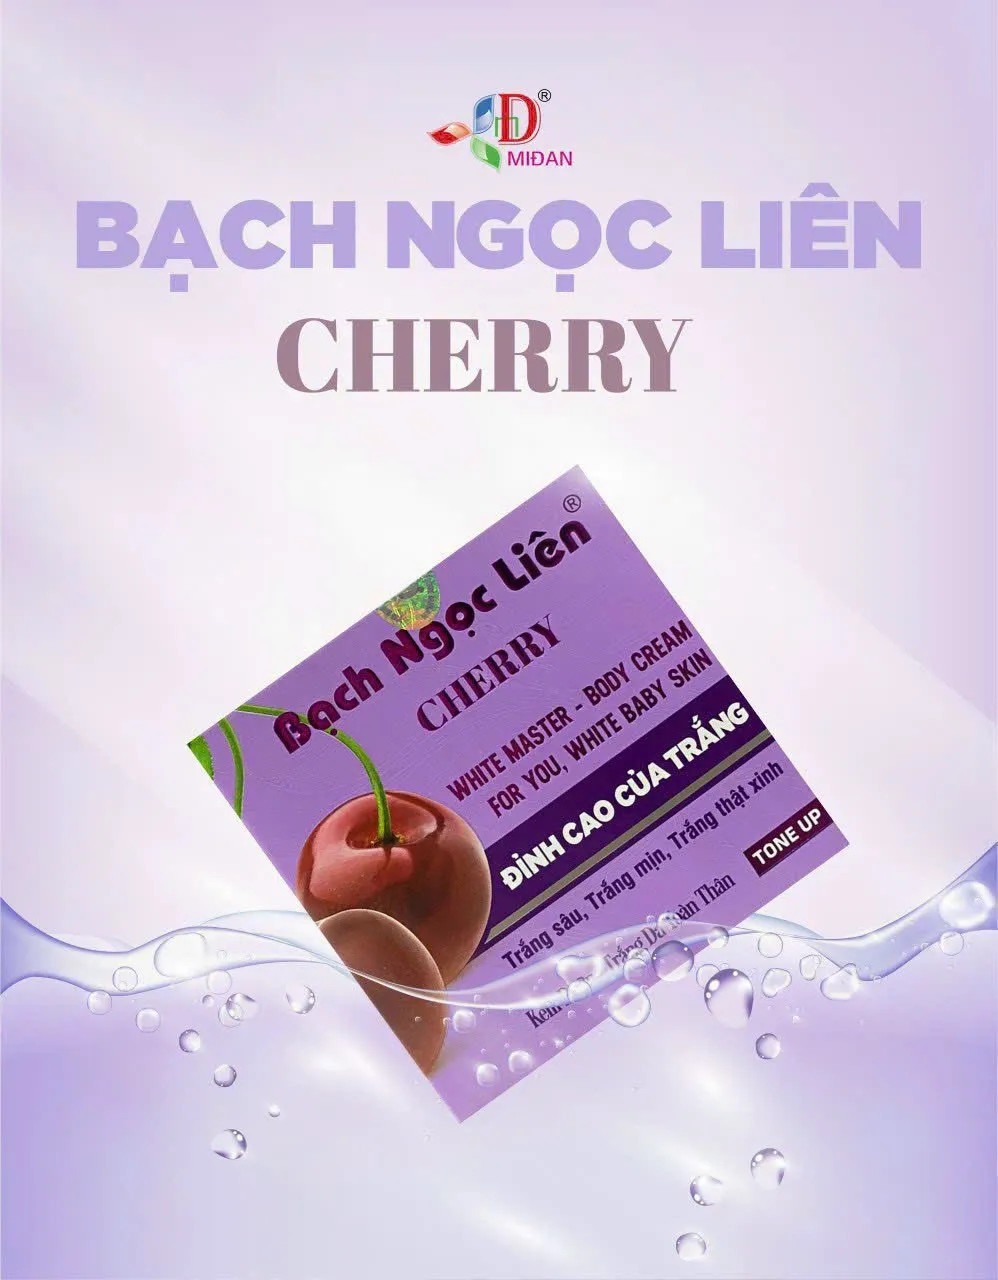 Kem dưỡng trắng body bạch ngọc liên cherry tím ĐỈNH CAO CỦA LÀM TRẮNG 120g